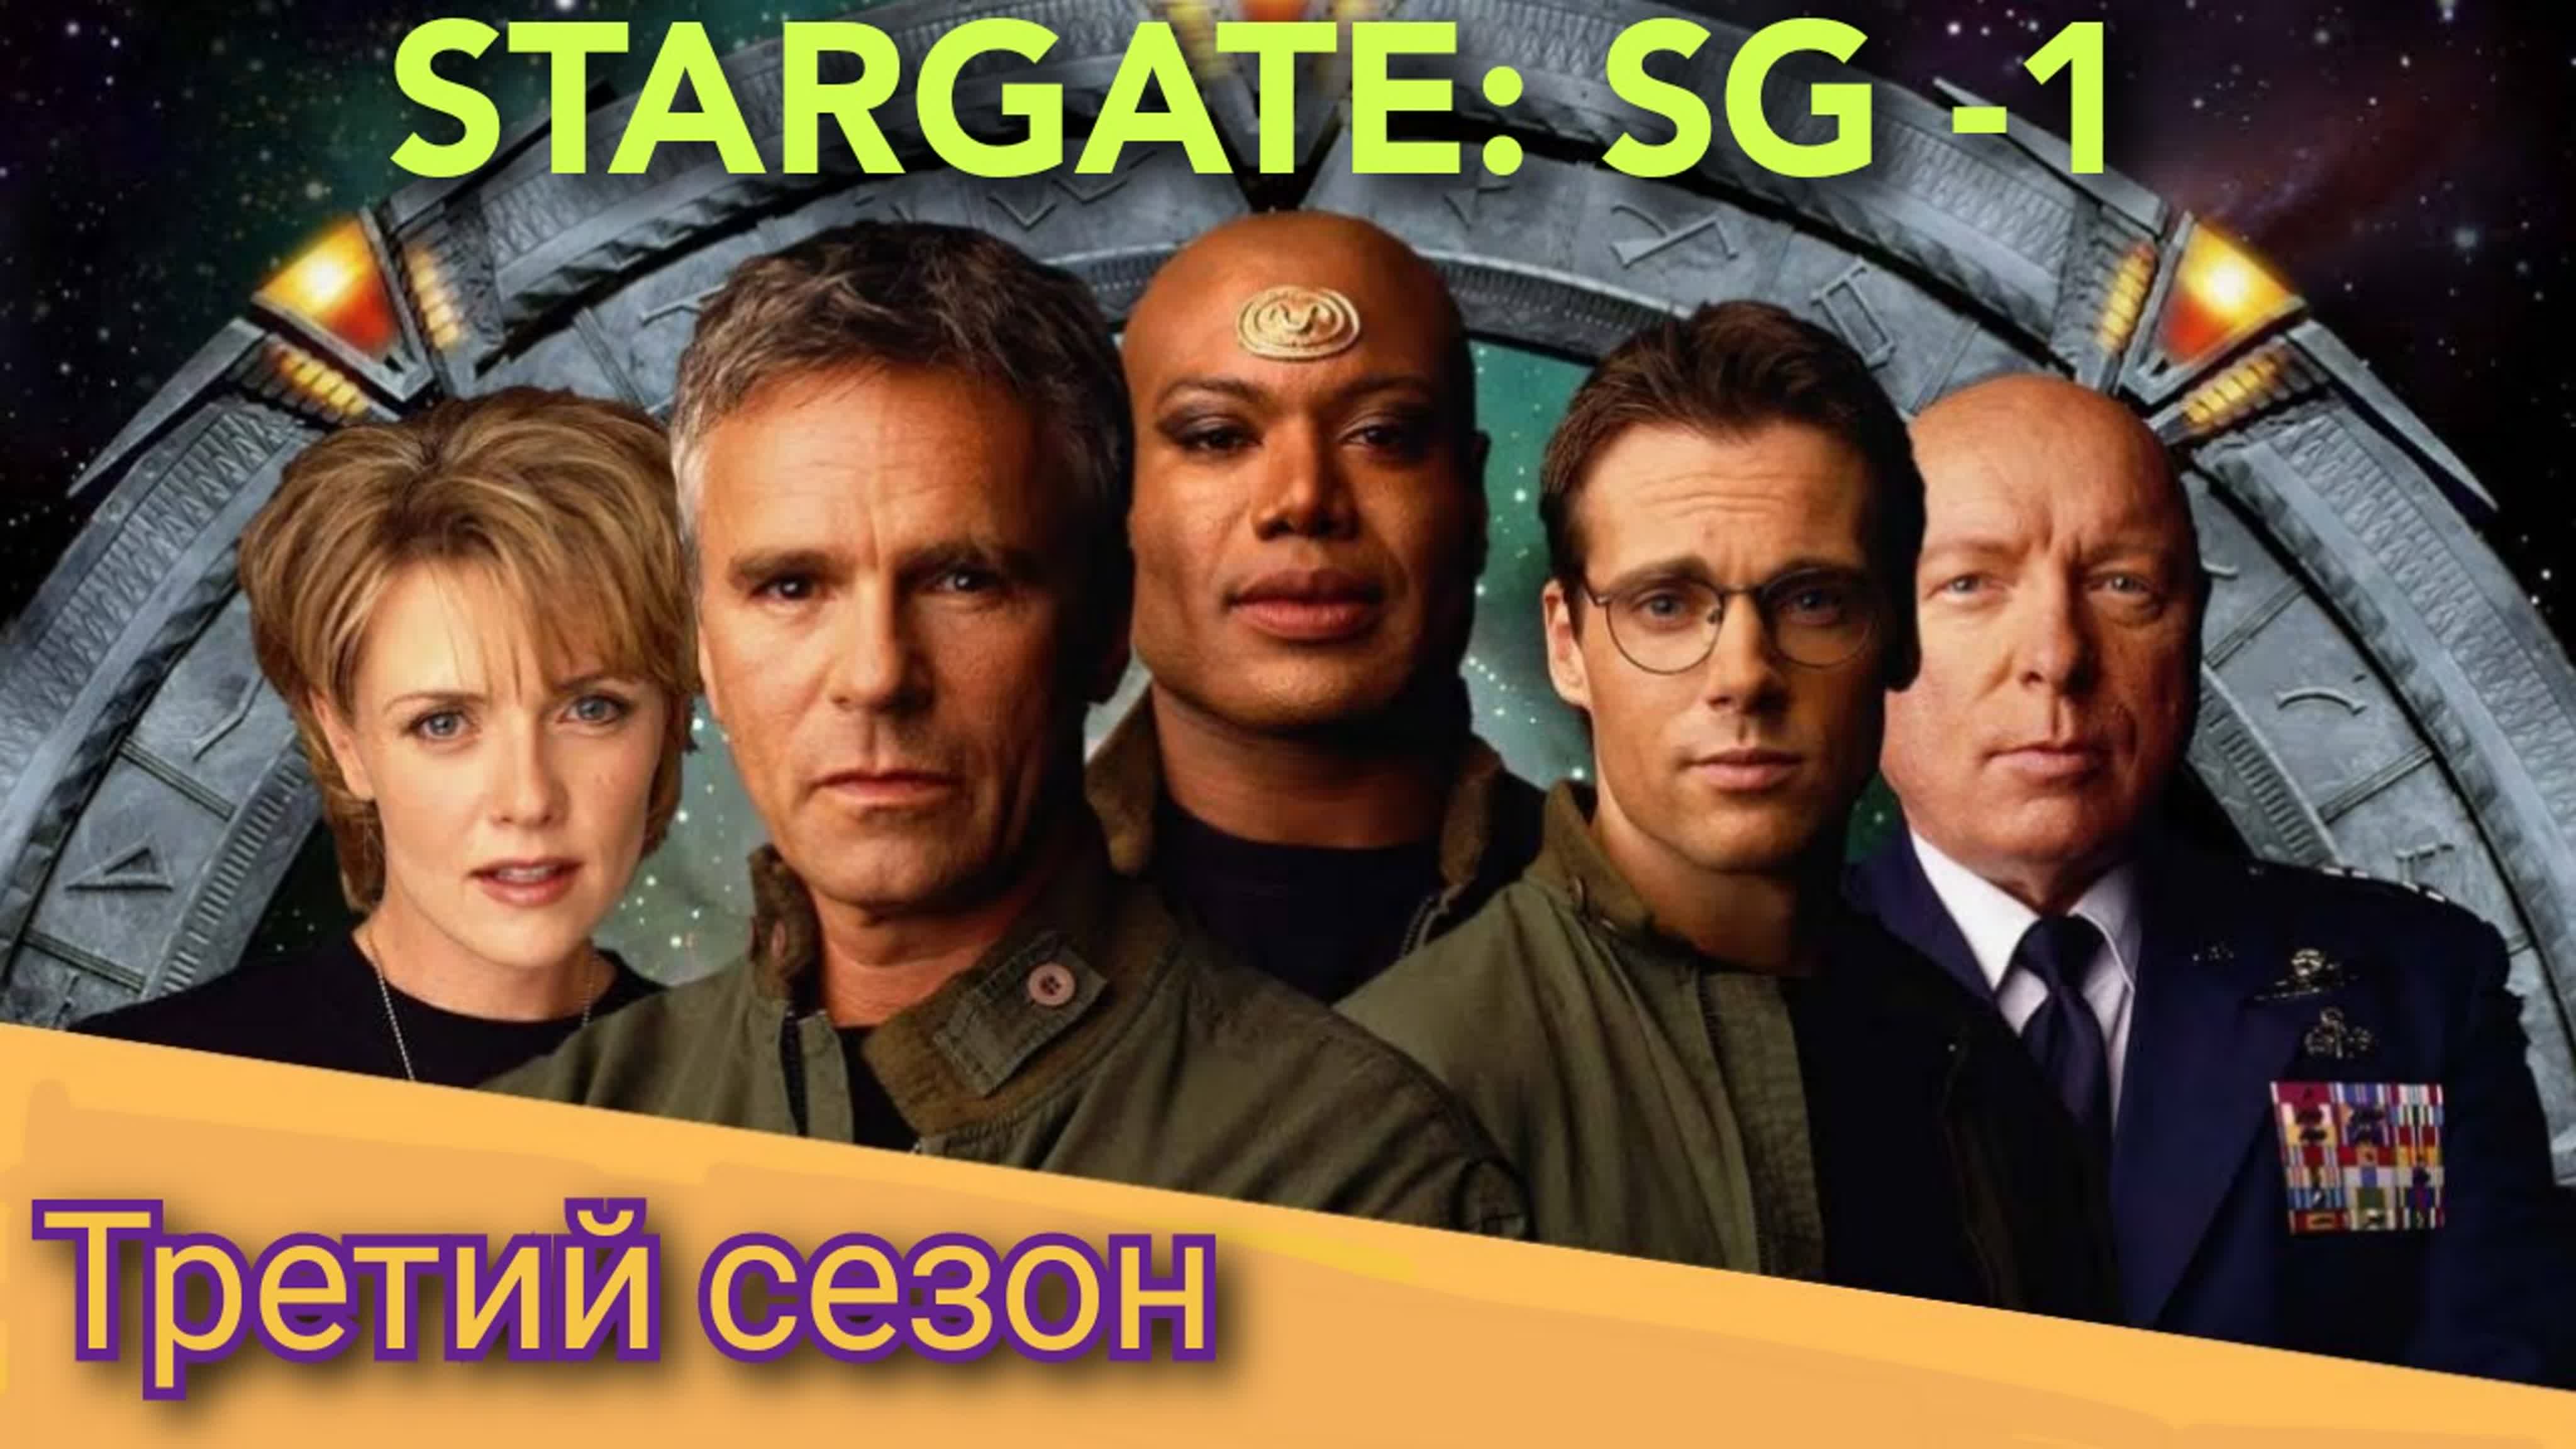 «Звёздные врата: SG-1» Третий сезон (1999—2000)